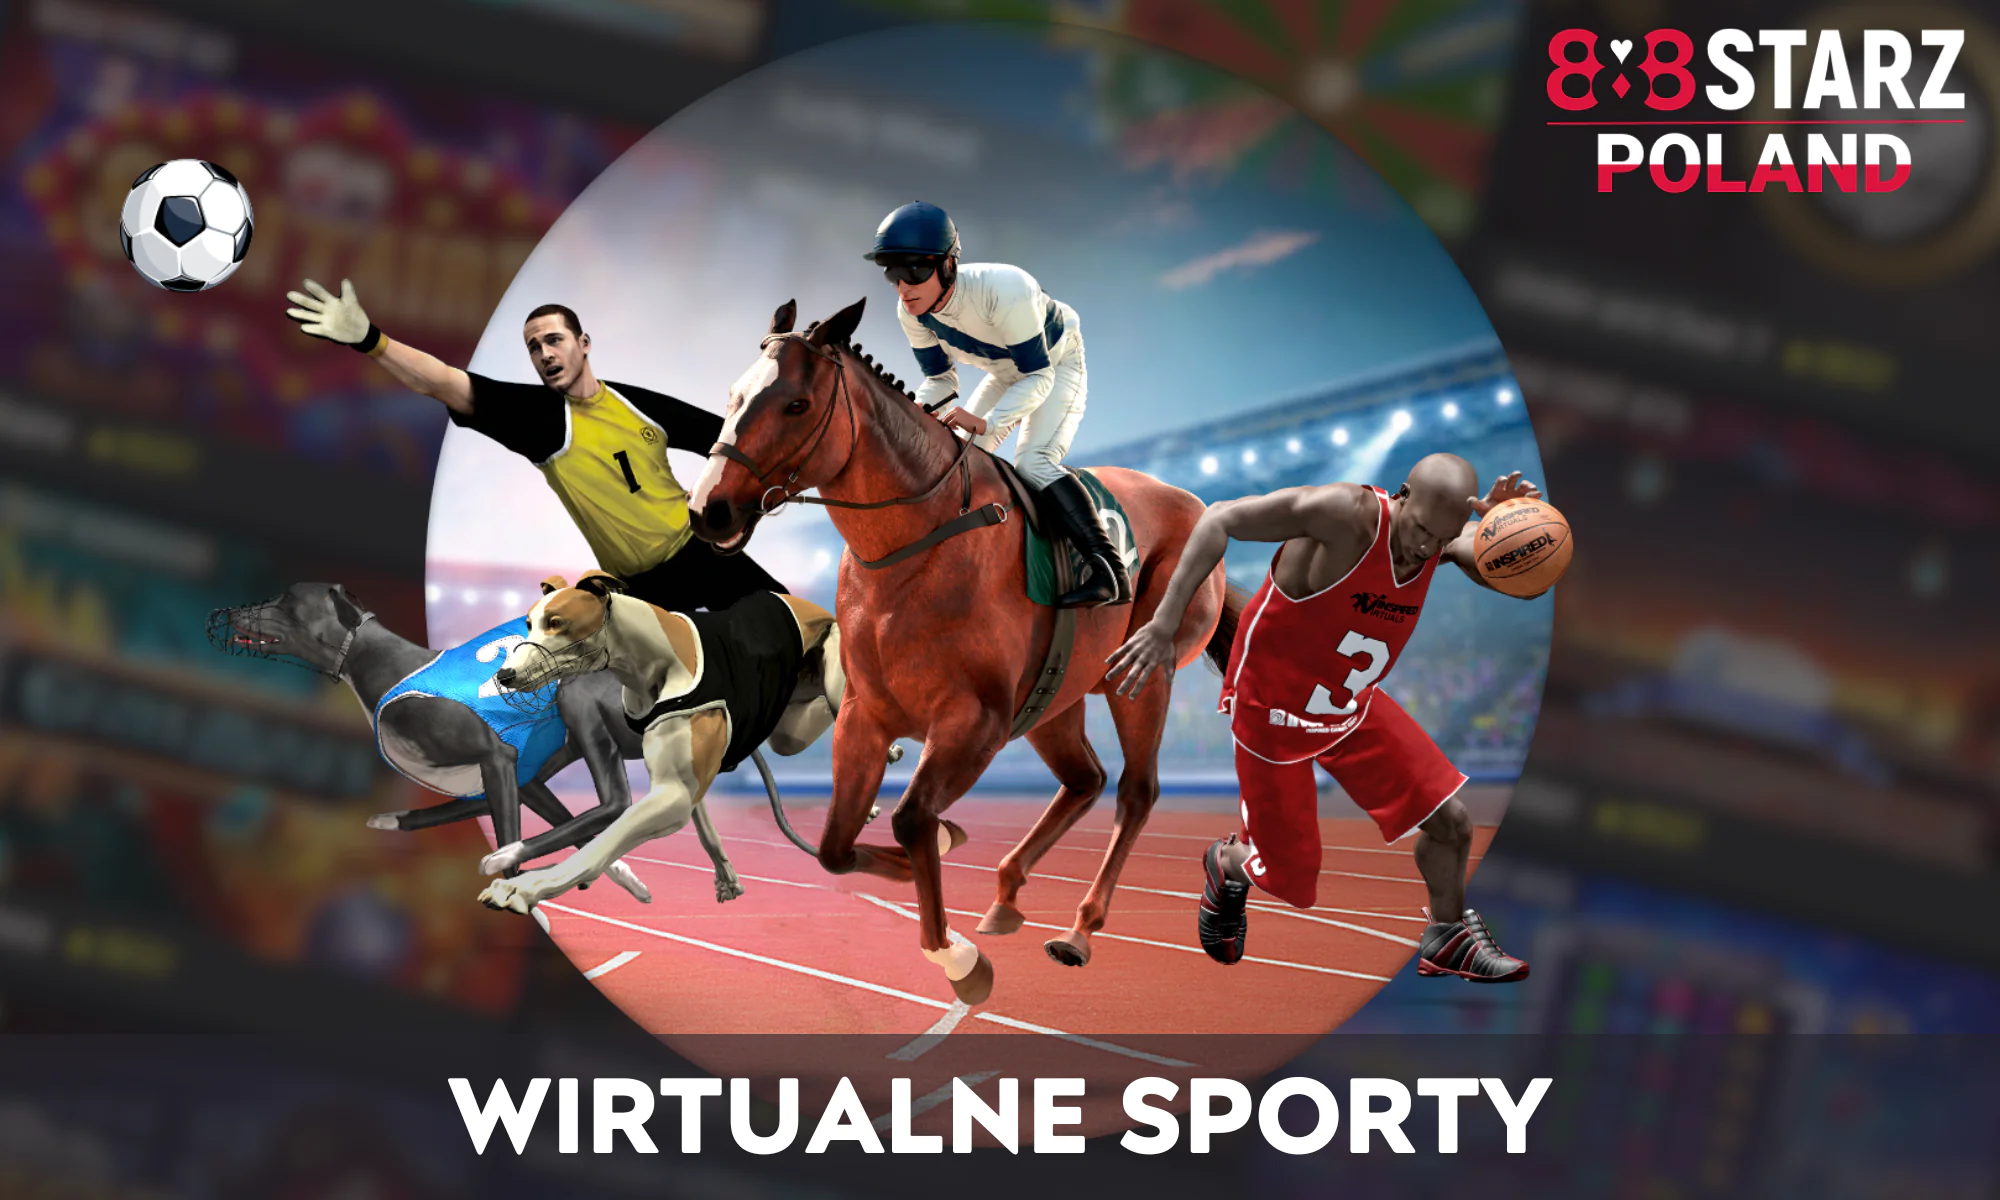 Zakłady 888 oferują specjalny rodzaj zakładów - zakłady na wirtualne gry i sporty